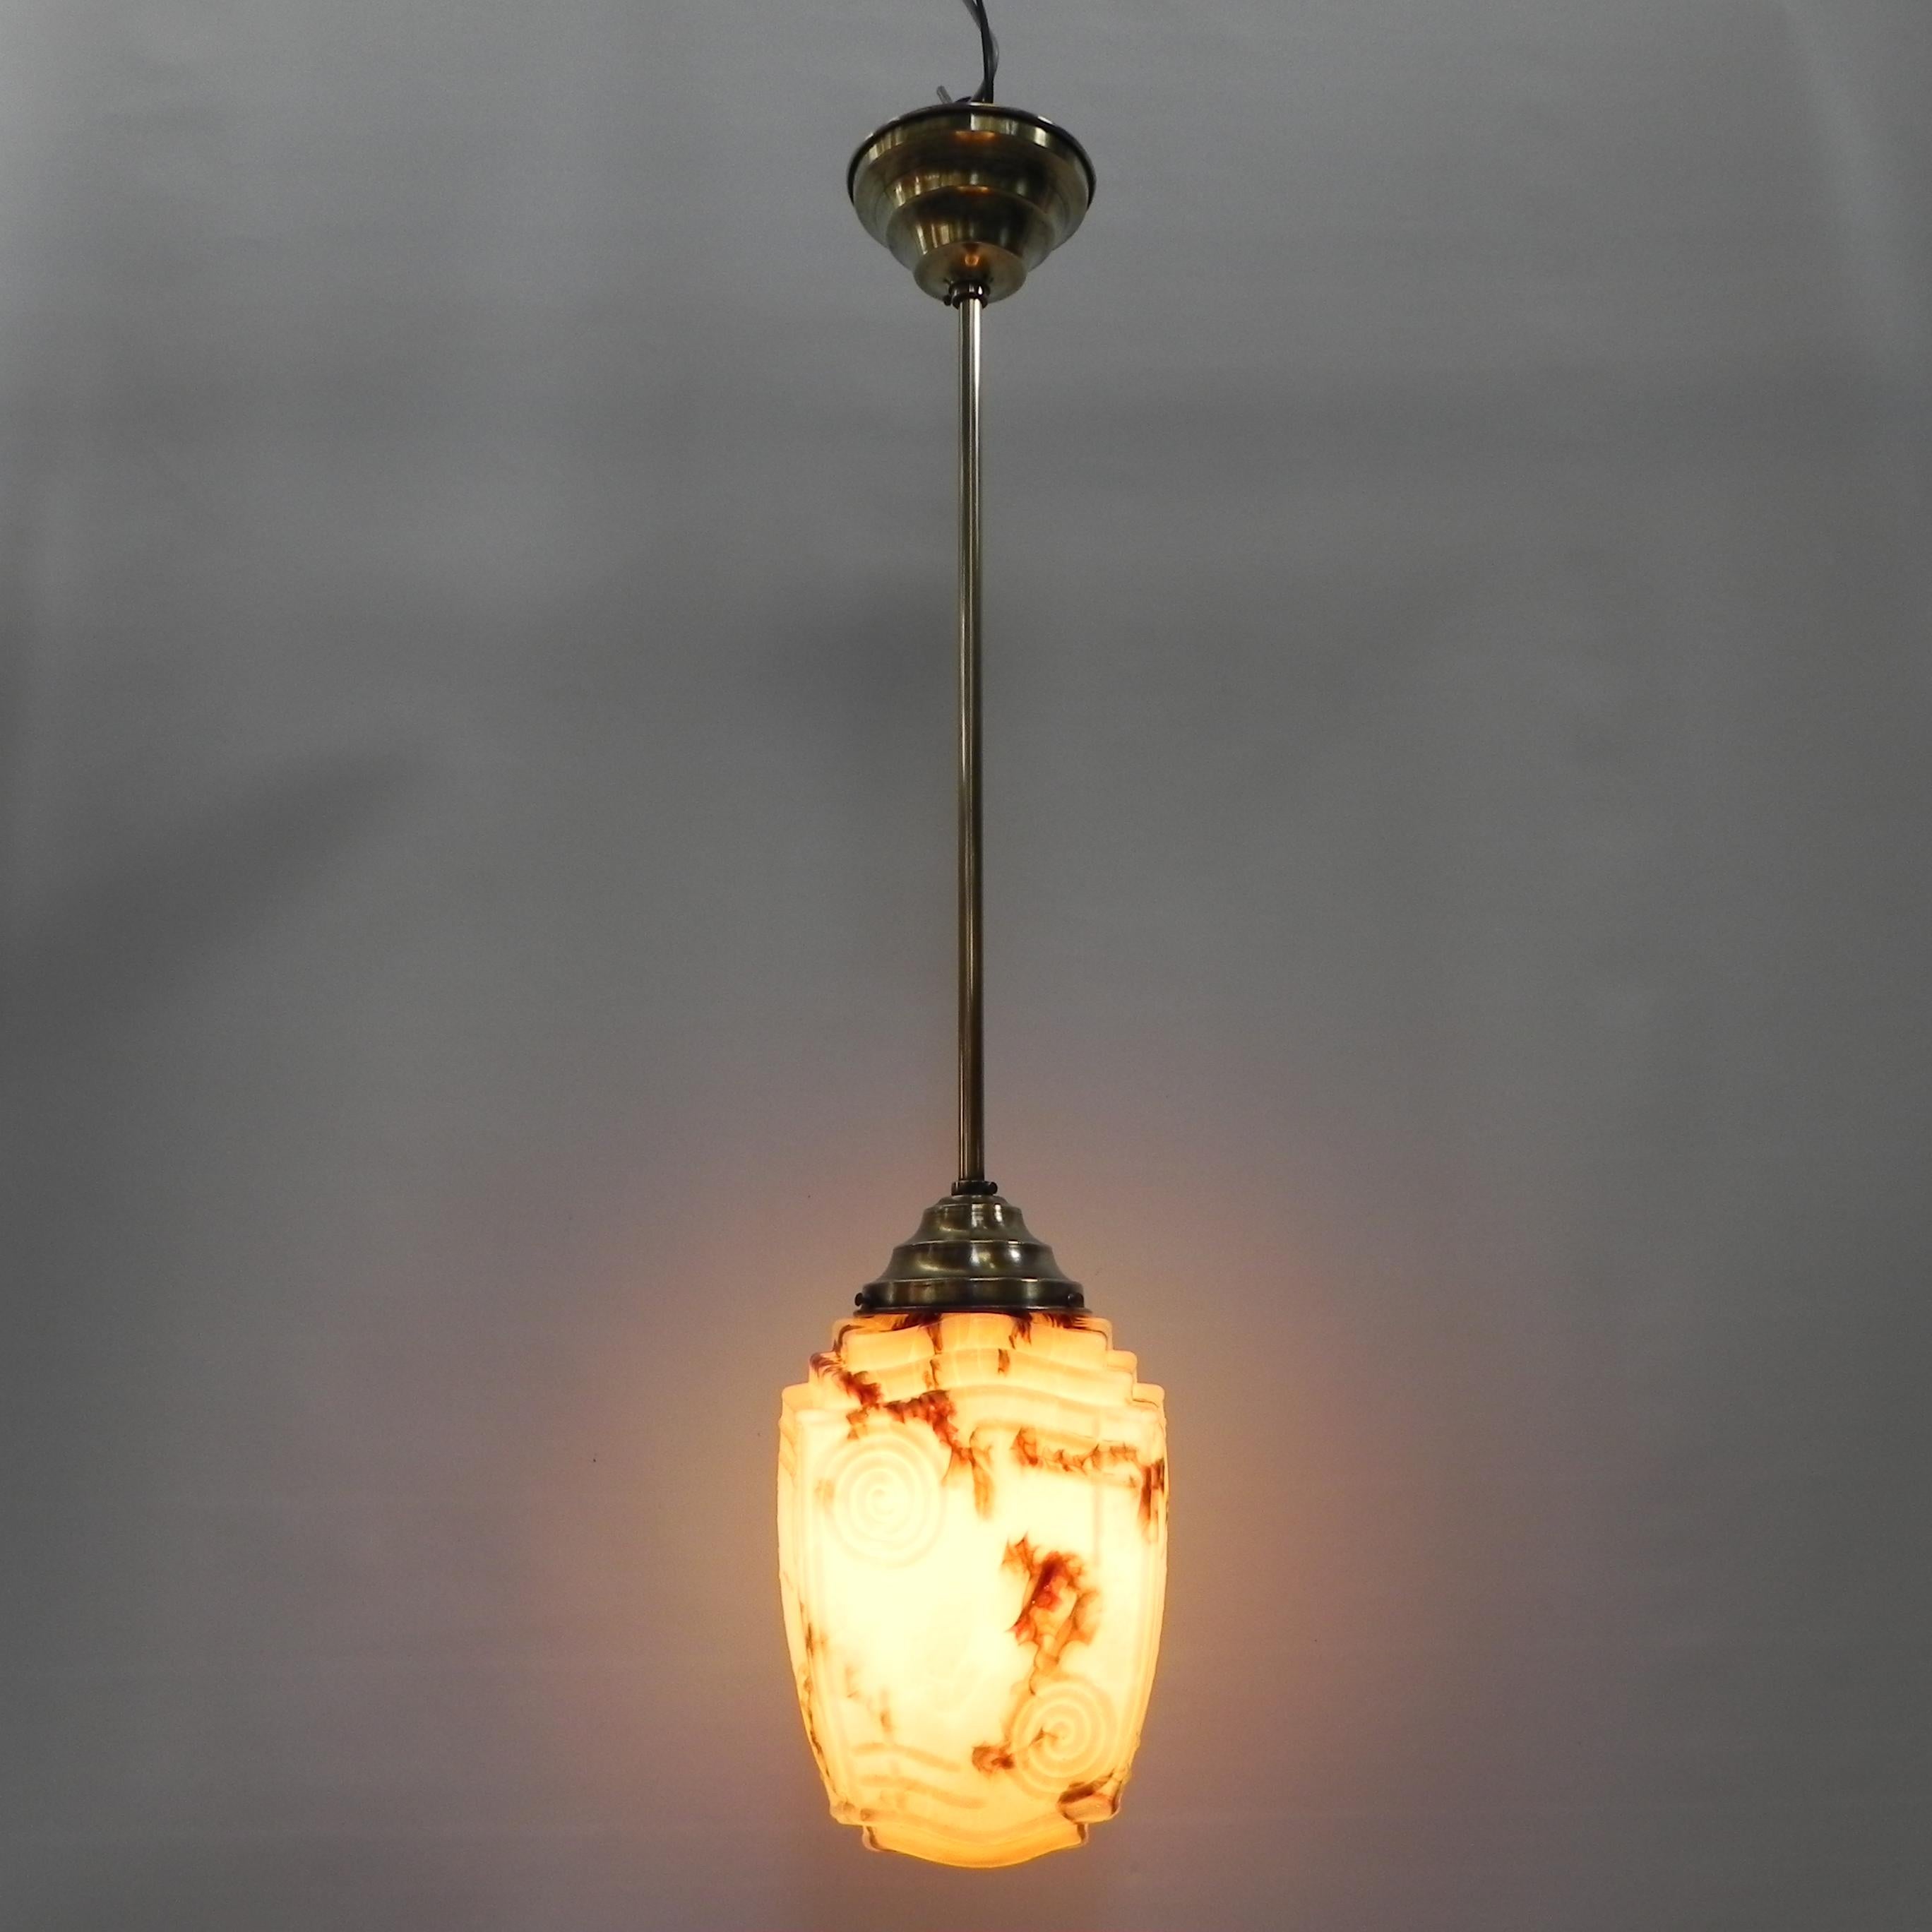 Hauteur totale : 85 cm.
Ø : 20 cm.
Hauteur de la hotte : 24 cm.
Cette lampe est équipée d'un
un grand support d'ampoule (E27) et un nouveau filetage.
Origine : Belgique, années 1930.
Matière : laiton / verre.